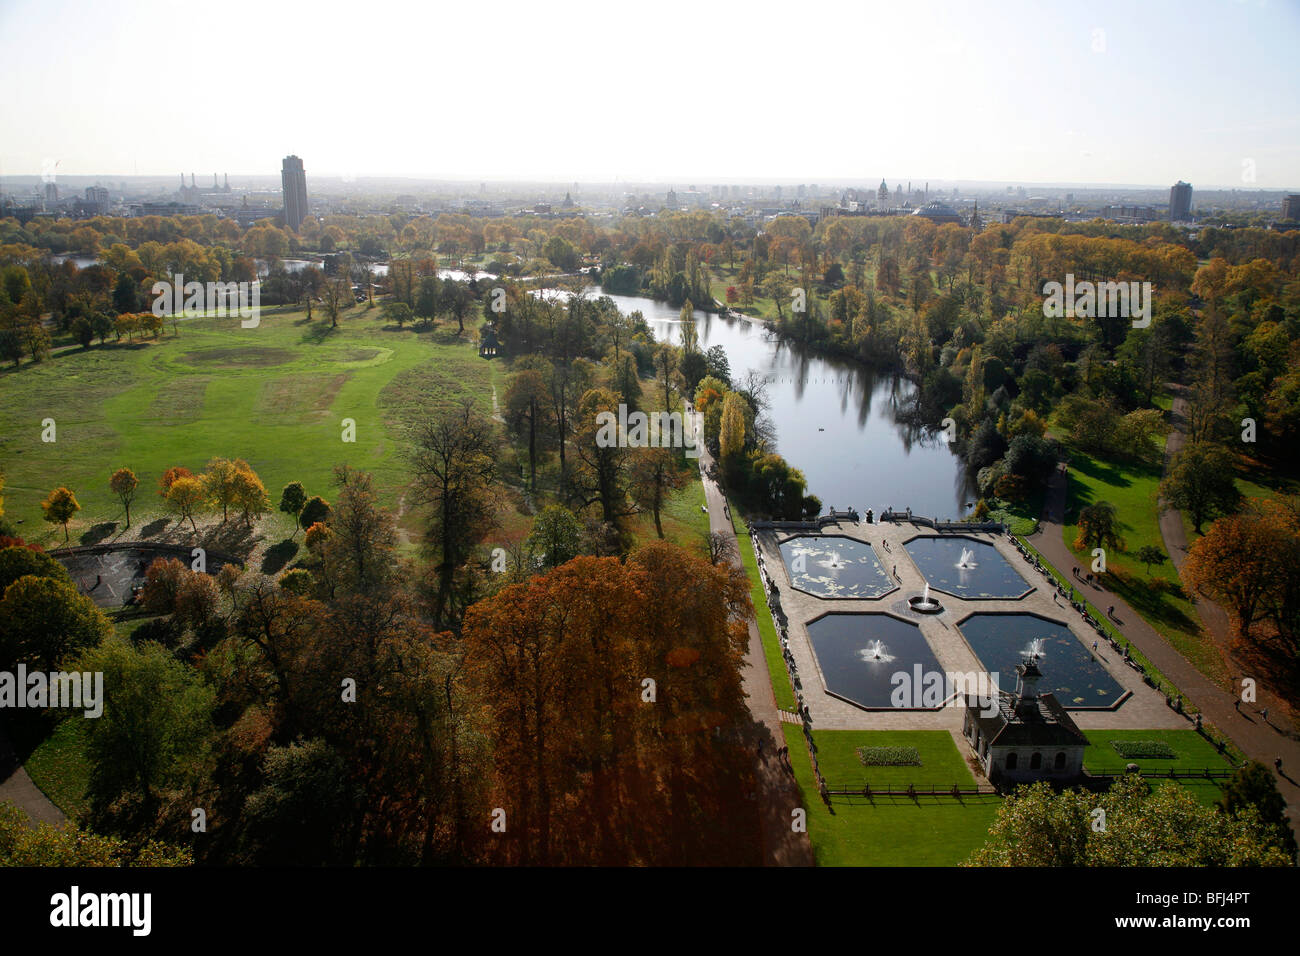 Vista aérea de las fuentes italianas y la serpentina, Hyde Park y Los Jardines de Kensington, Londres, Reino Unido. Foto de stock